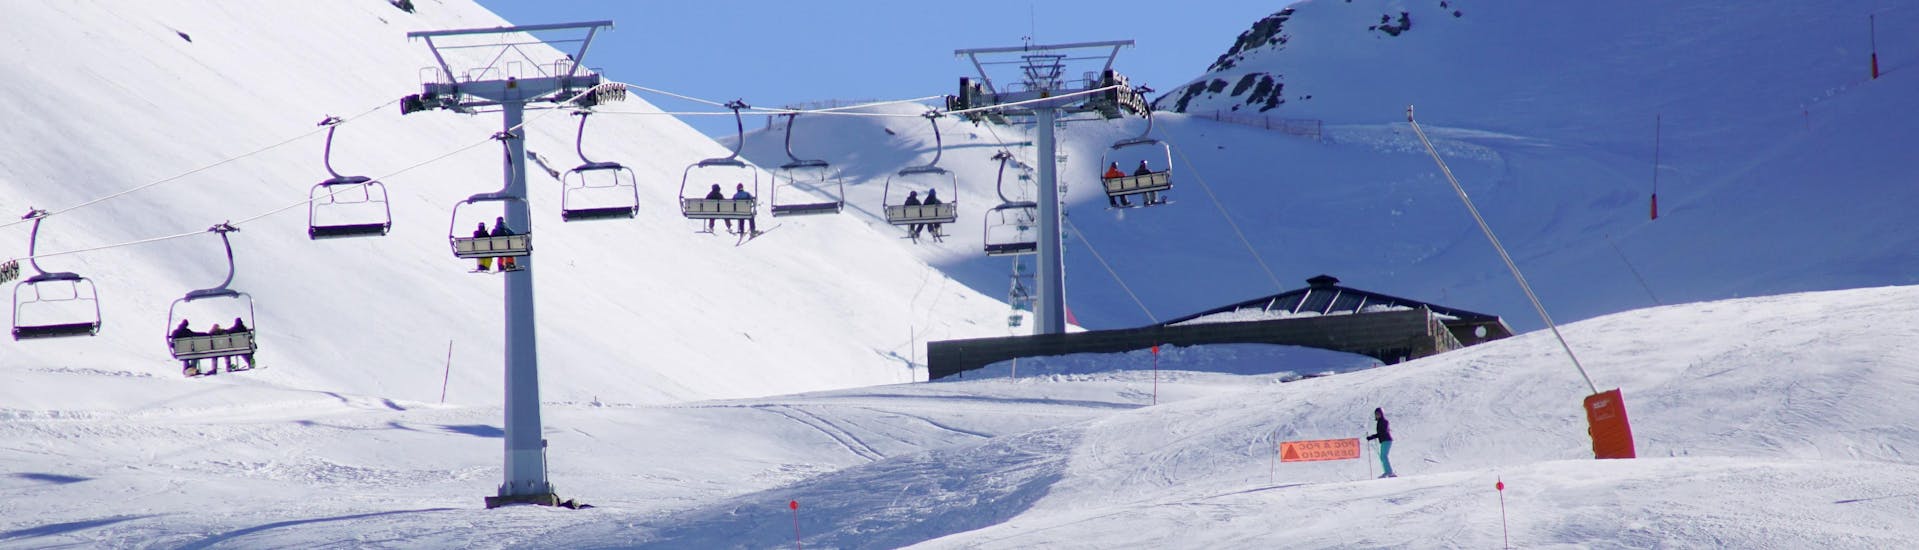 Ein Bild einer Skipiste im katalanischen Skigebiet Vall de Boí, wo Besucher bei einer der örtlichen Skischulen einen Skikurs buchen können.